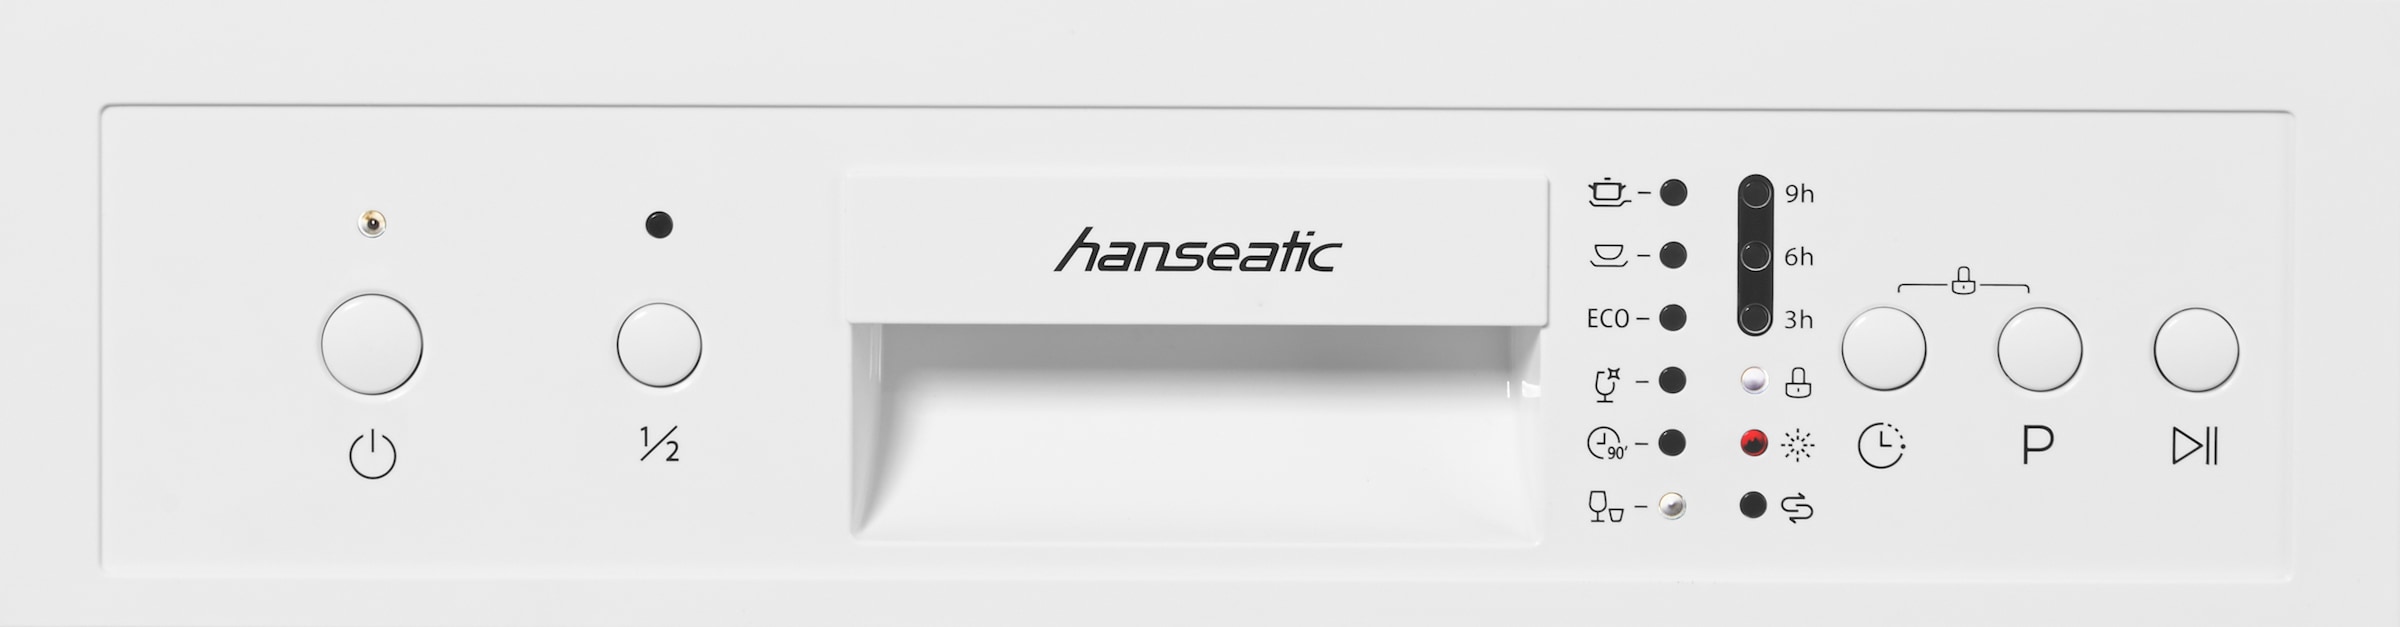 »HG4585E97636W«, Standgeschirrspüler Hanseatic jetzt OTTO kaufen Maßgedecke bei HG4585E97636W, 9